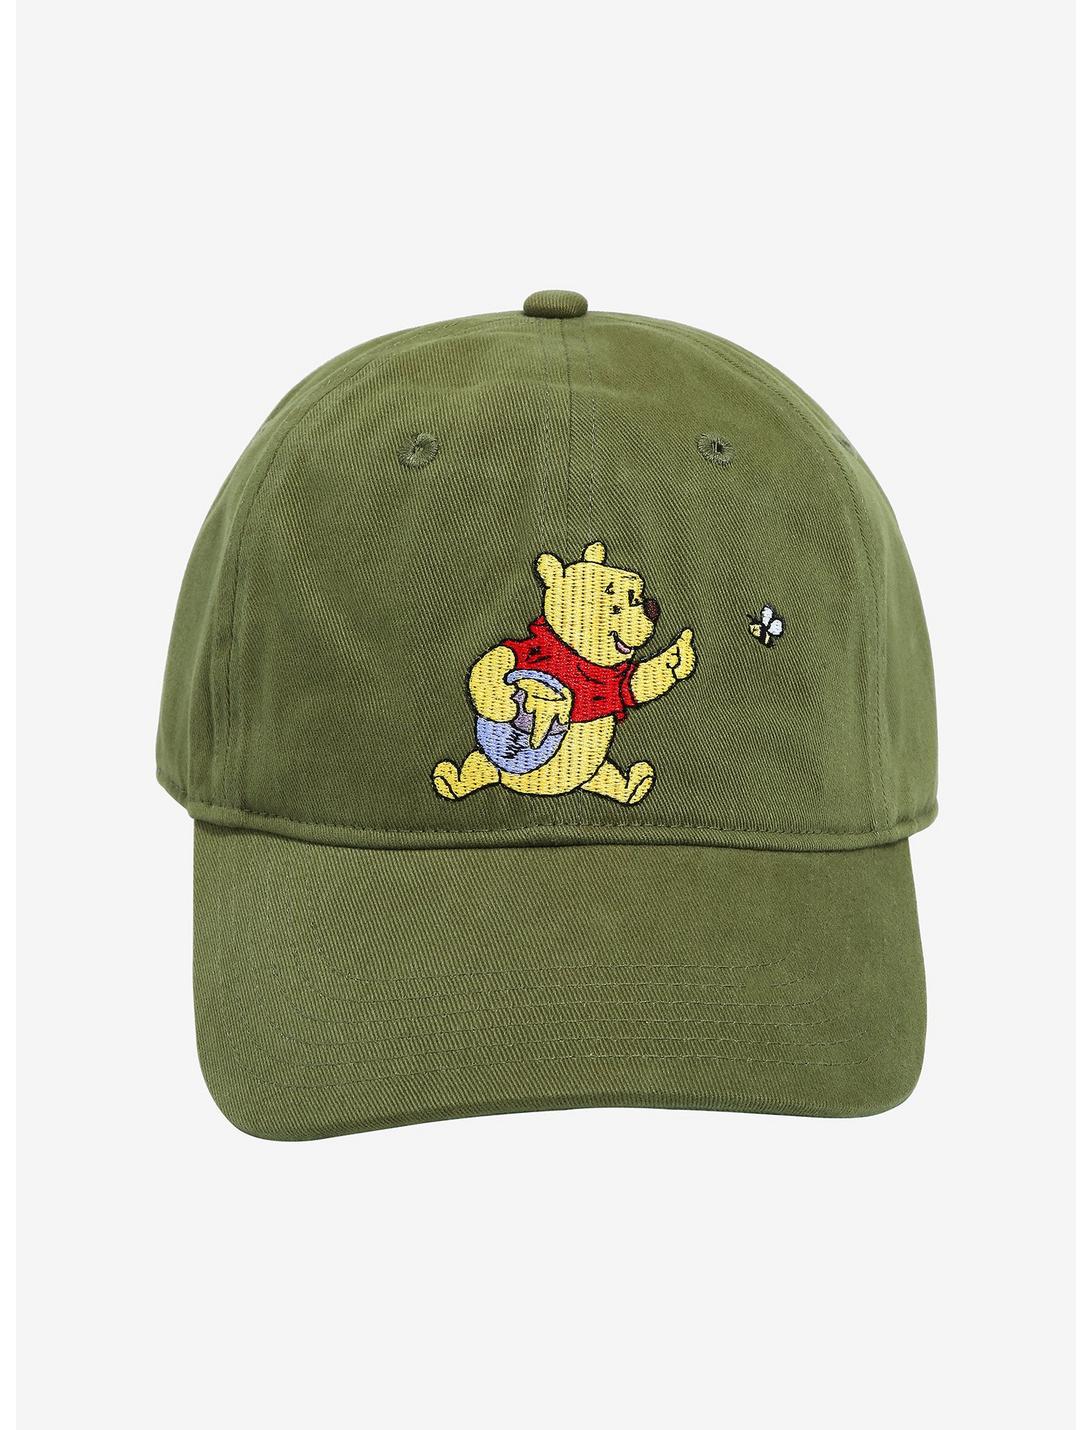 Disney Winnie the Pooh Pooh with Hunny Pot Cap, , hi-res